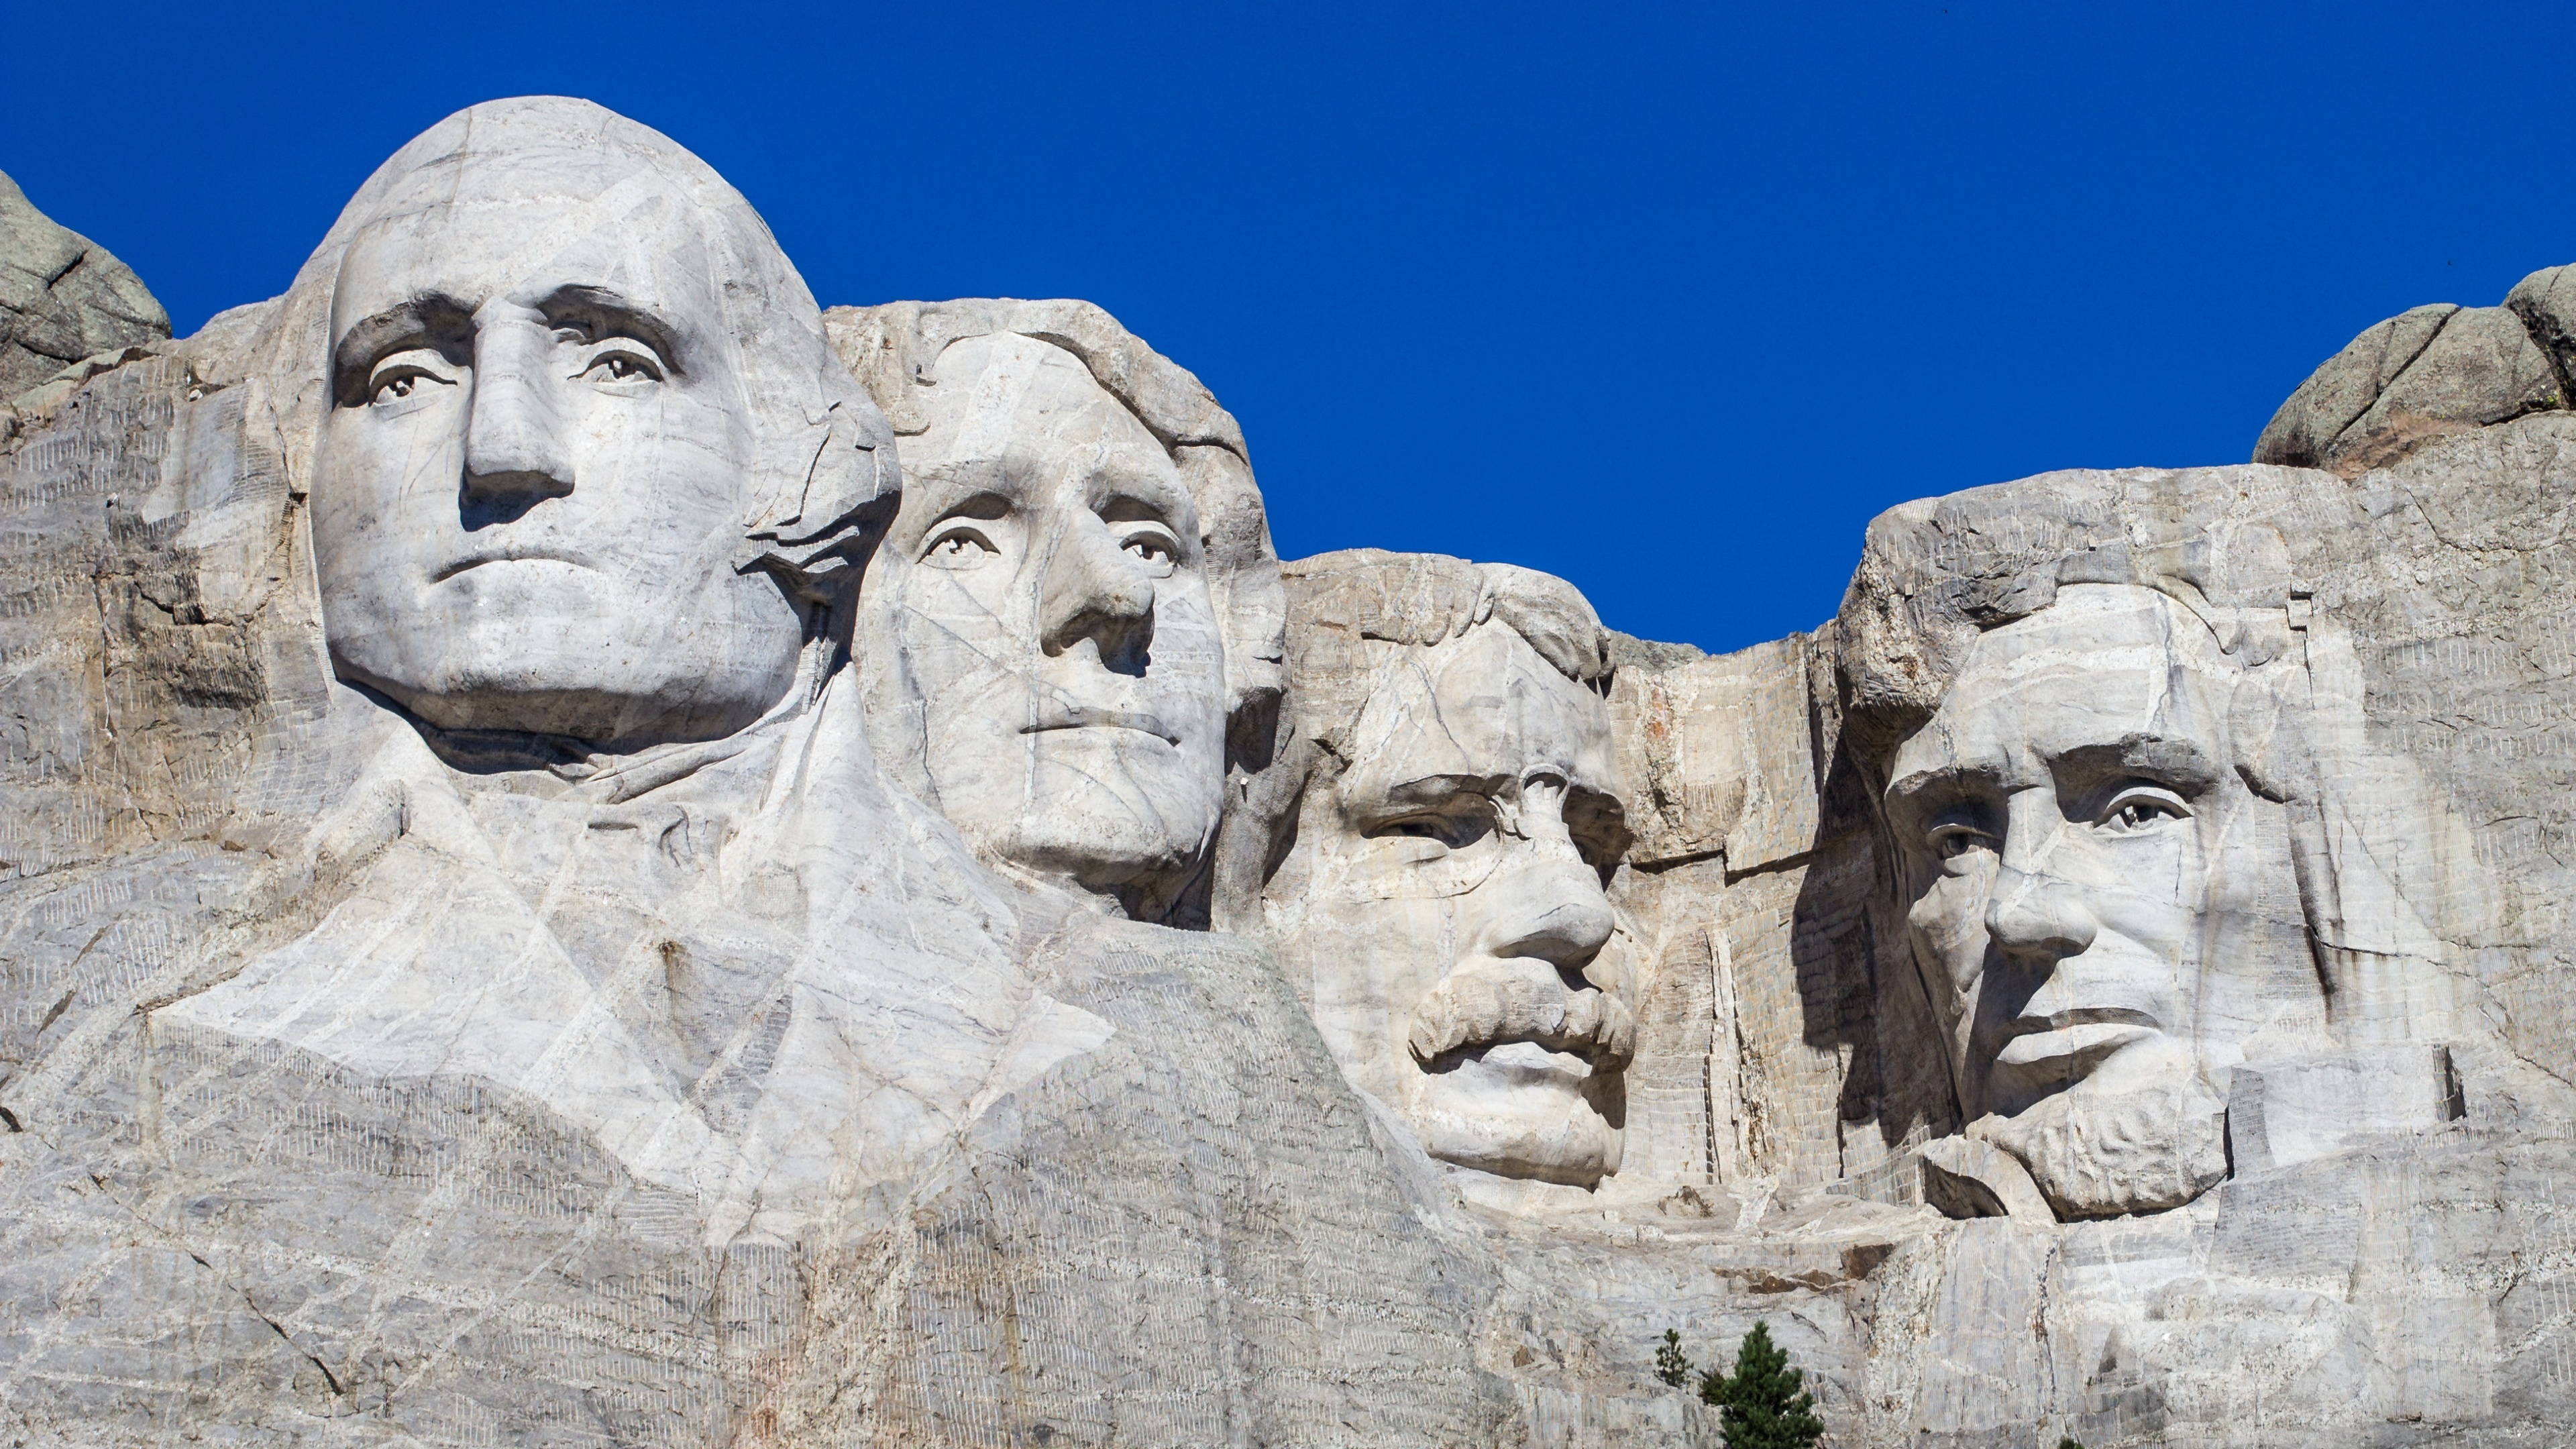 4K wallpaper, Presidents in stone, South Dakota beauty, Blue sky backdrop, 3840x2160 4K Desktop